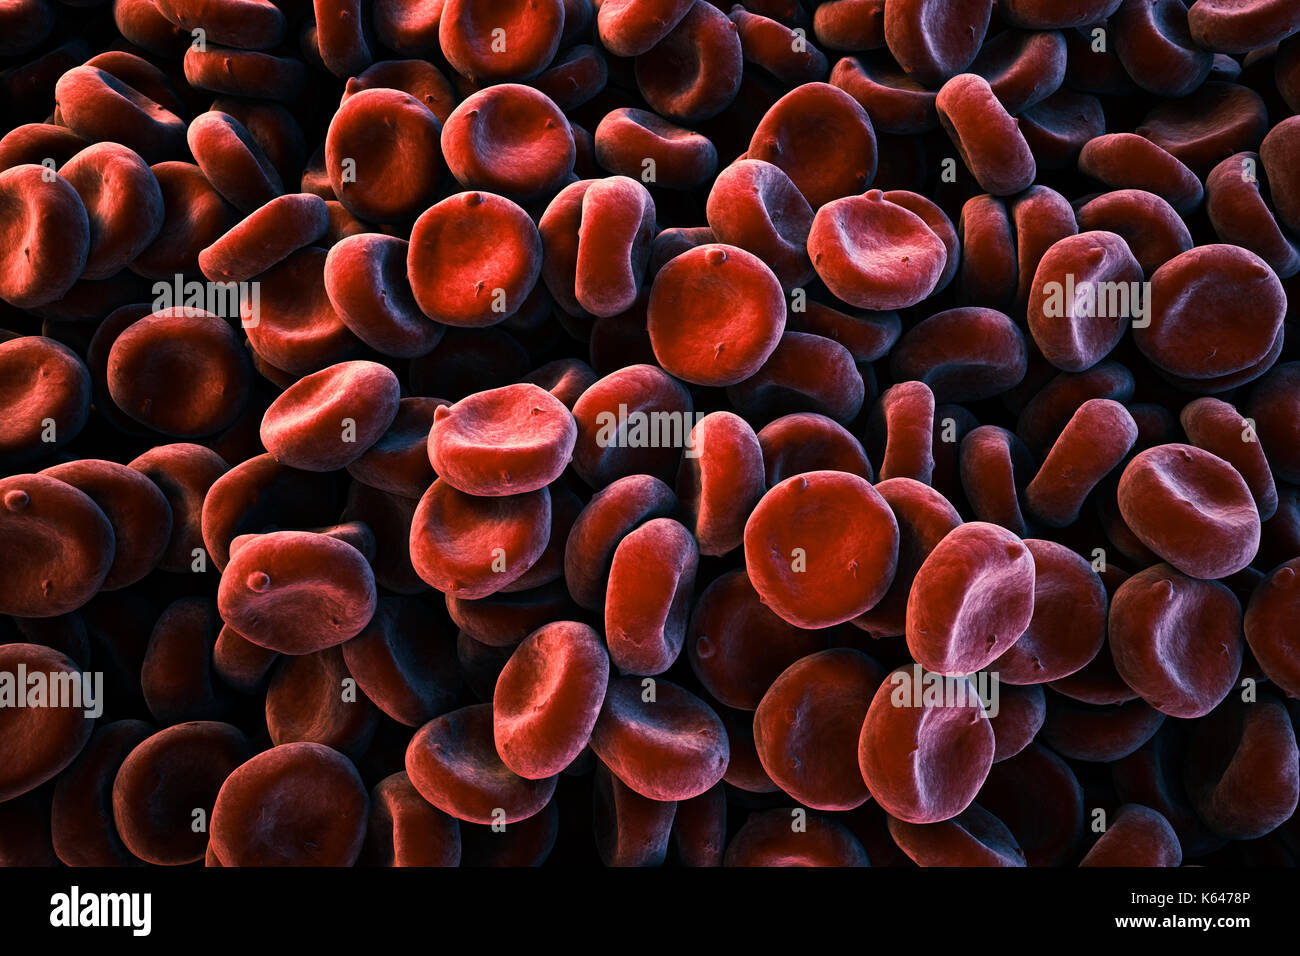 Close-up de la imagen transporta oxígeno de los glóbulos rojos (eritrocitos) pile, full frame, sem microscopio electrónico (escaneado) representación estilizada de color. Foto de stock